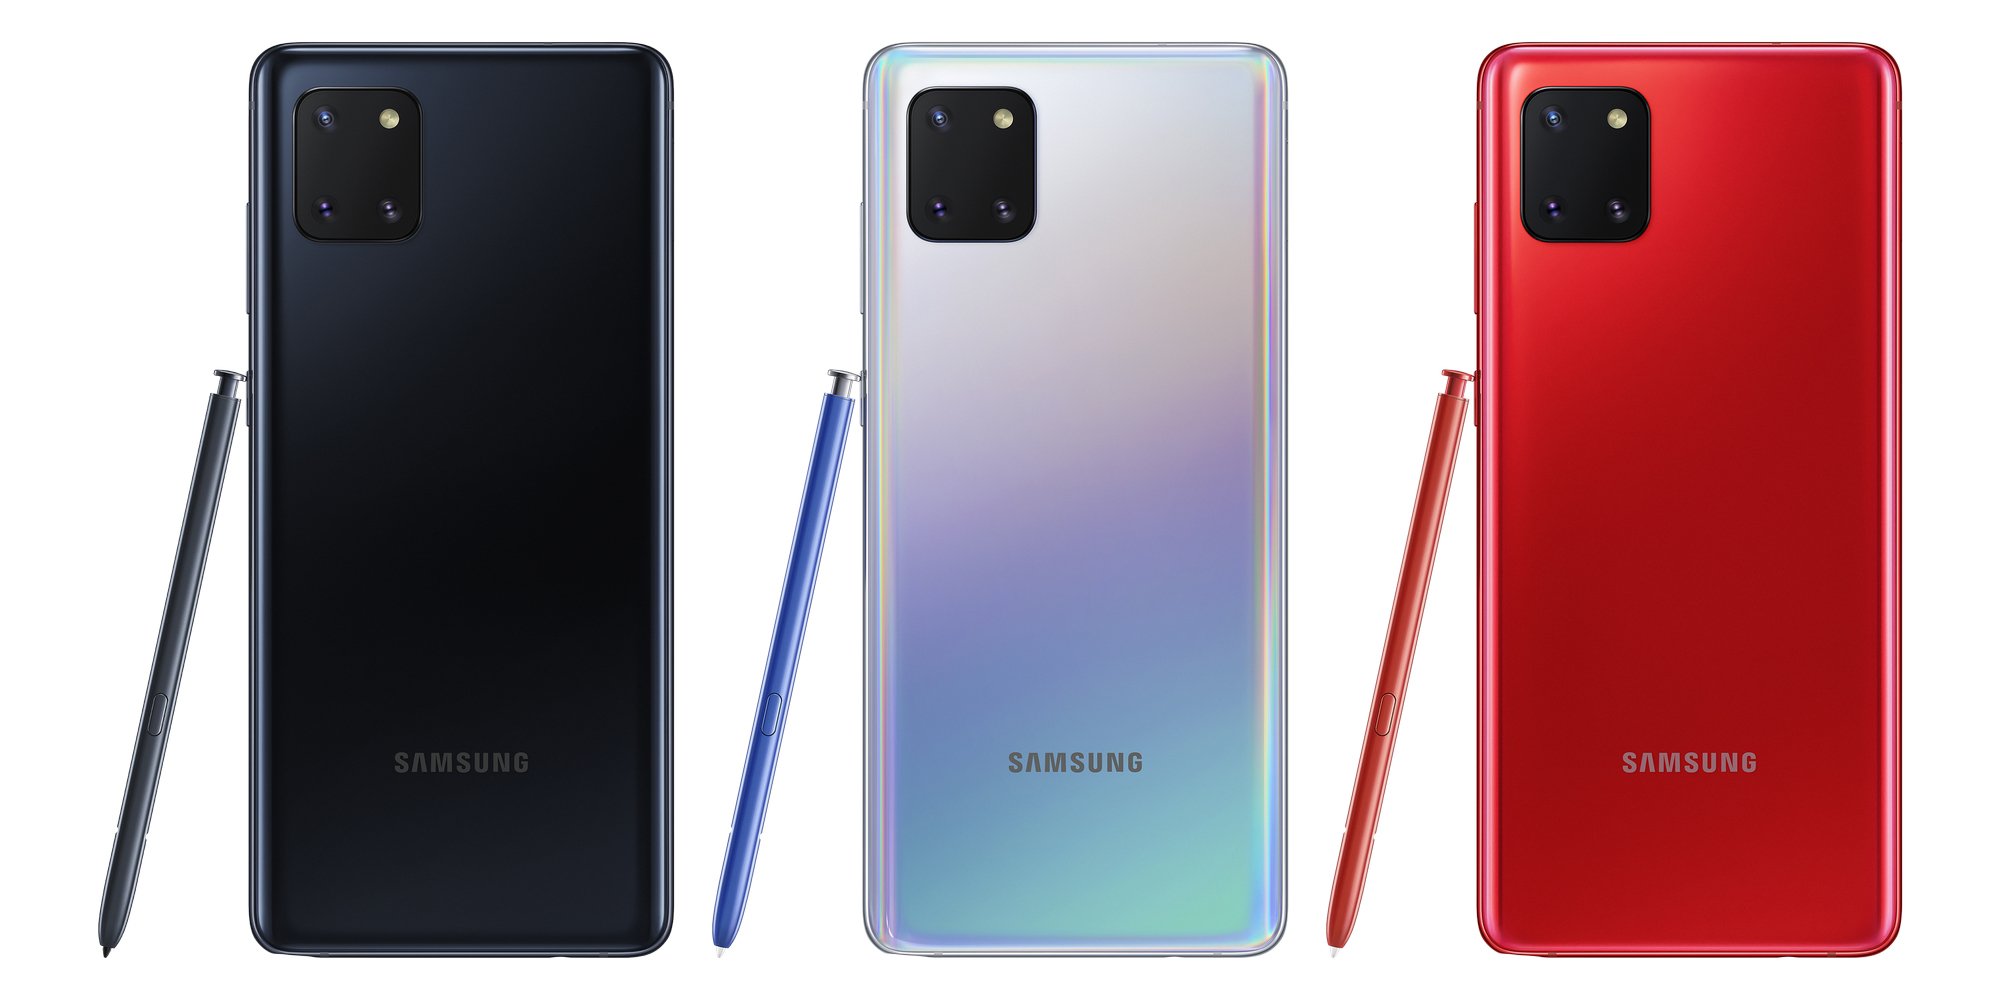 Inilah 5 Fitur Unggulan Samsung Galaxy Note 10 Lite Kaskus